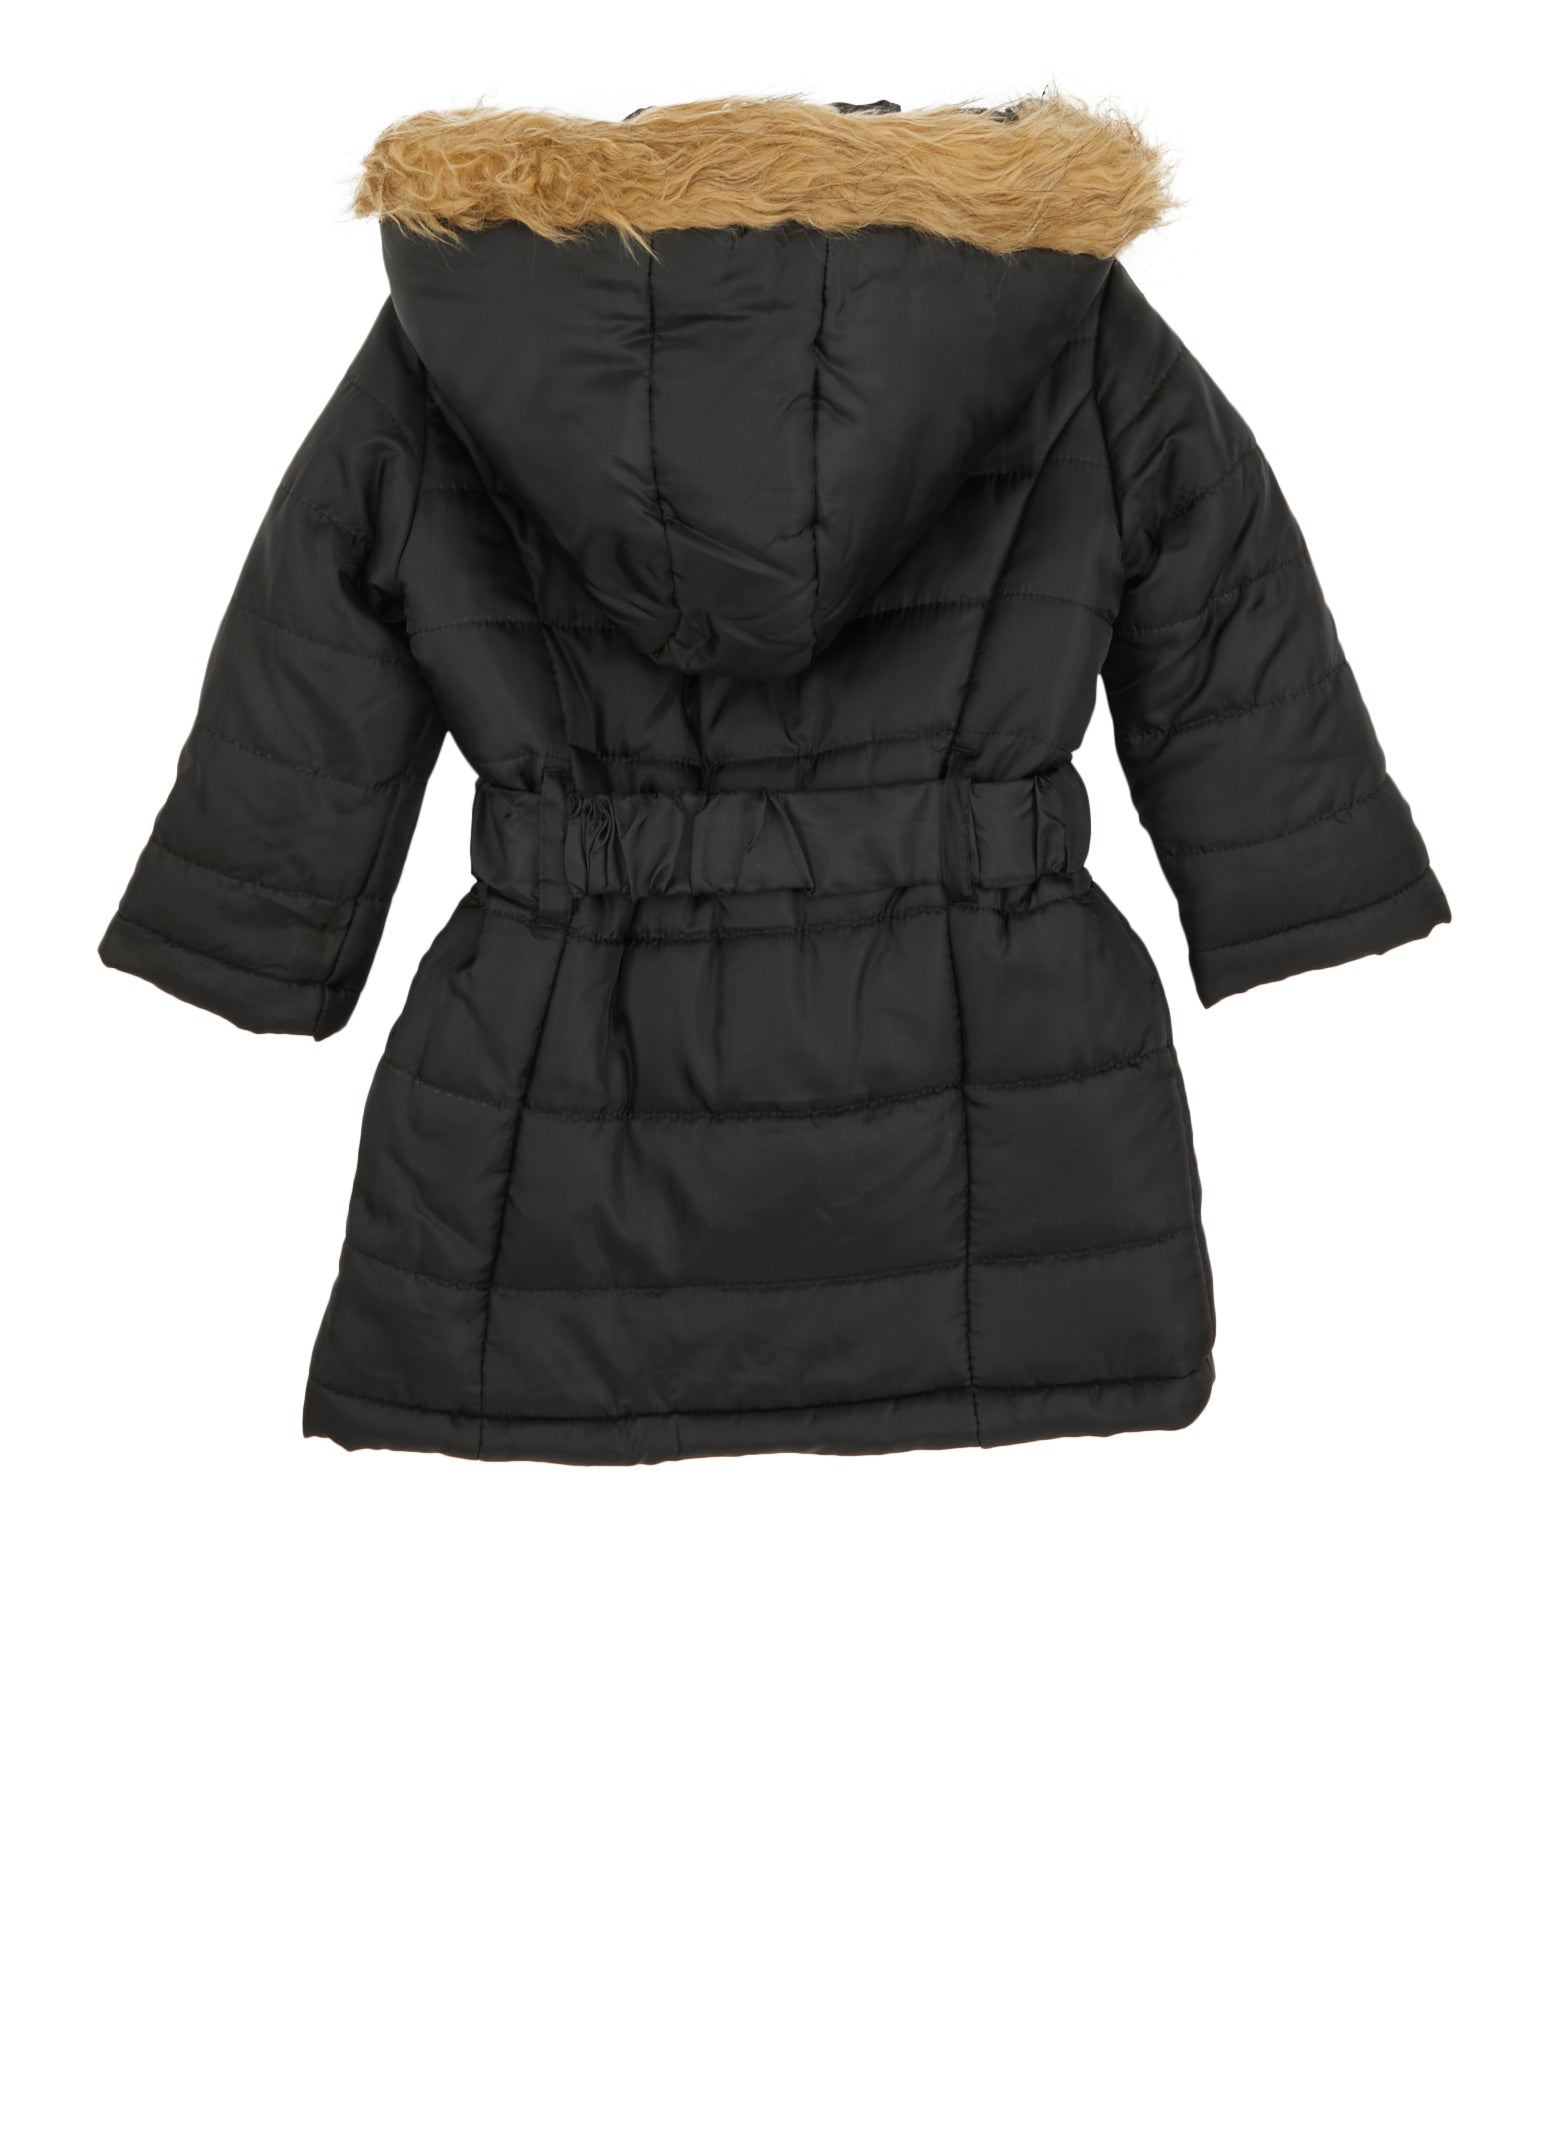 Toddler Girls Faux Fur Trim Hooded Long Puffer Jacket - Black